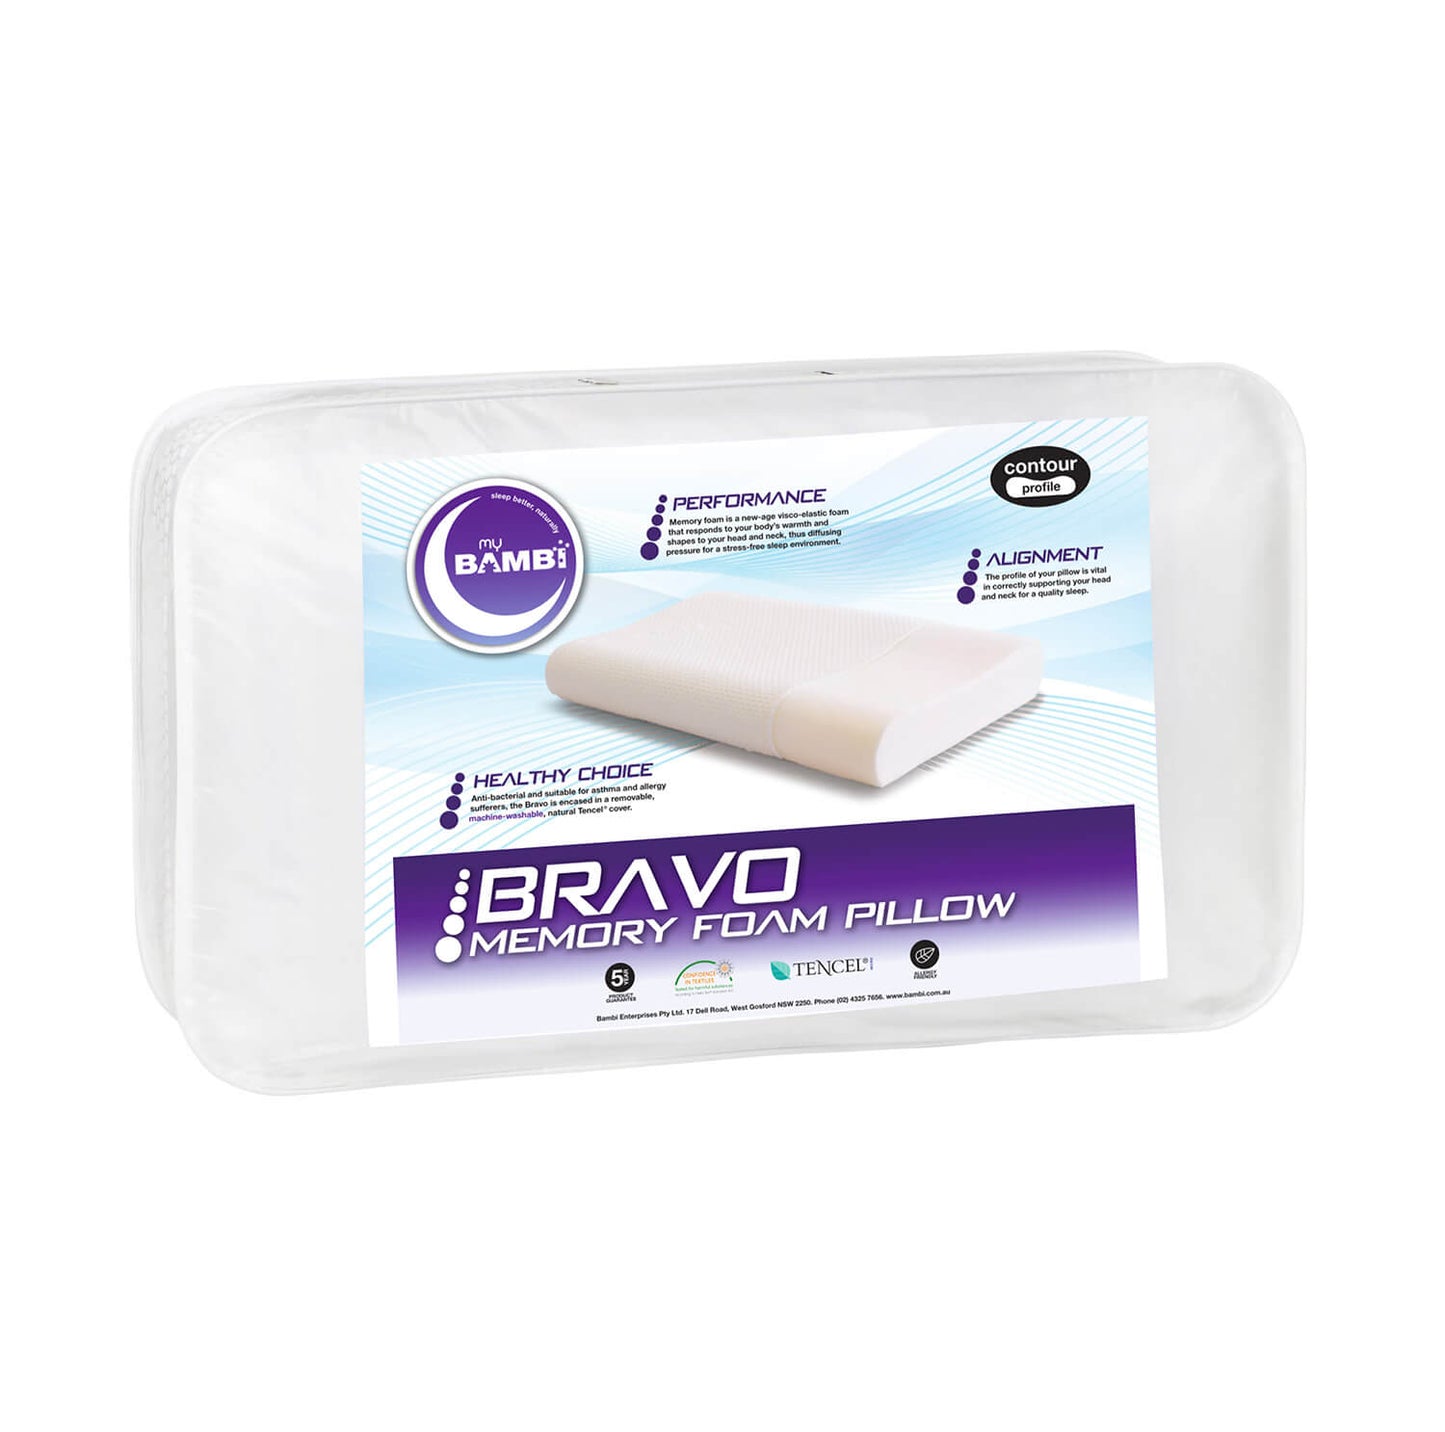 Bravo Memory Foam Pillow by Bambi